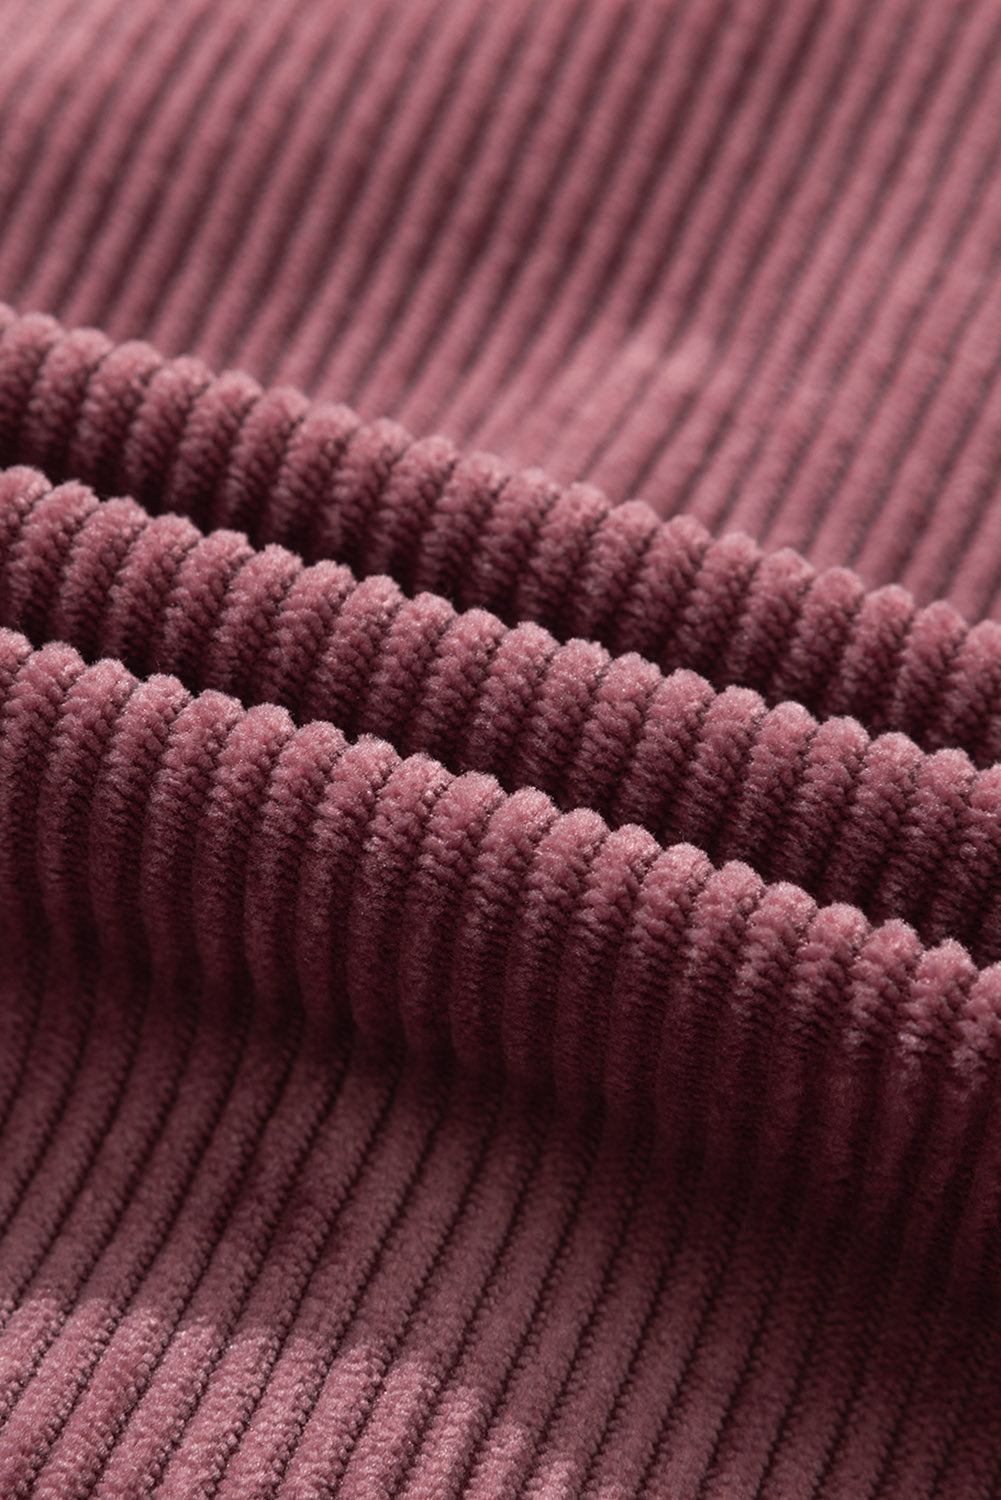 Veste texturée côtelée avec poches et boutons violets rouge vif